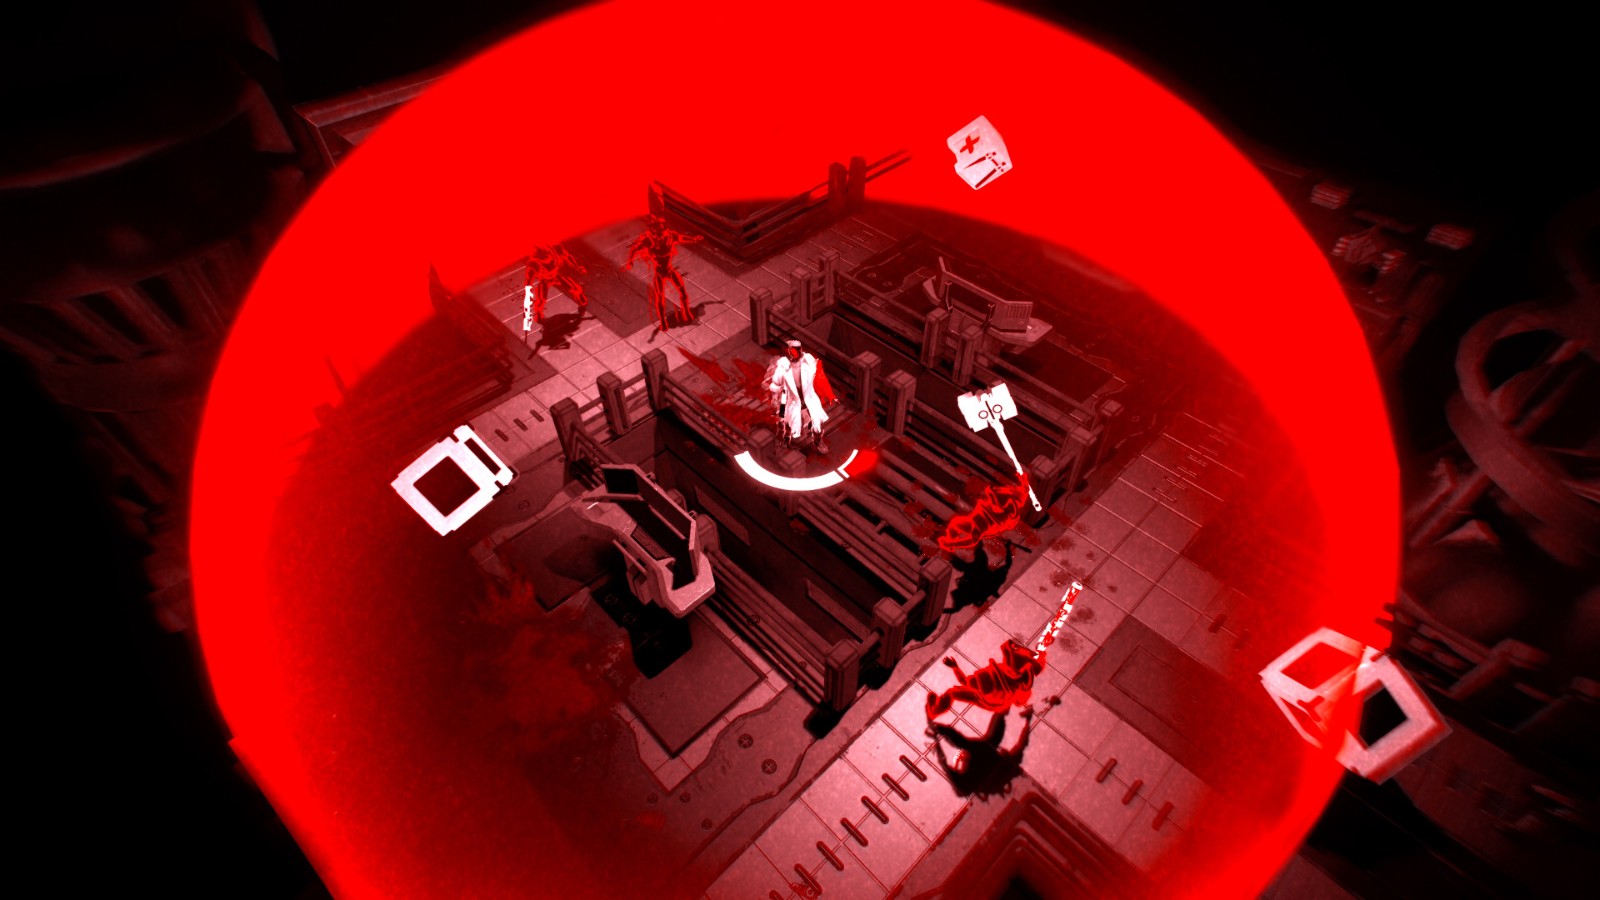 双摇杆射击游戏《血海雷霆》 现已在Steam发售 二次世界 第5张